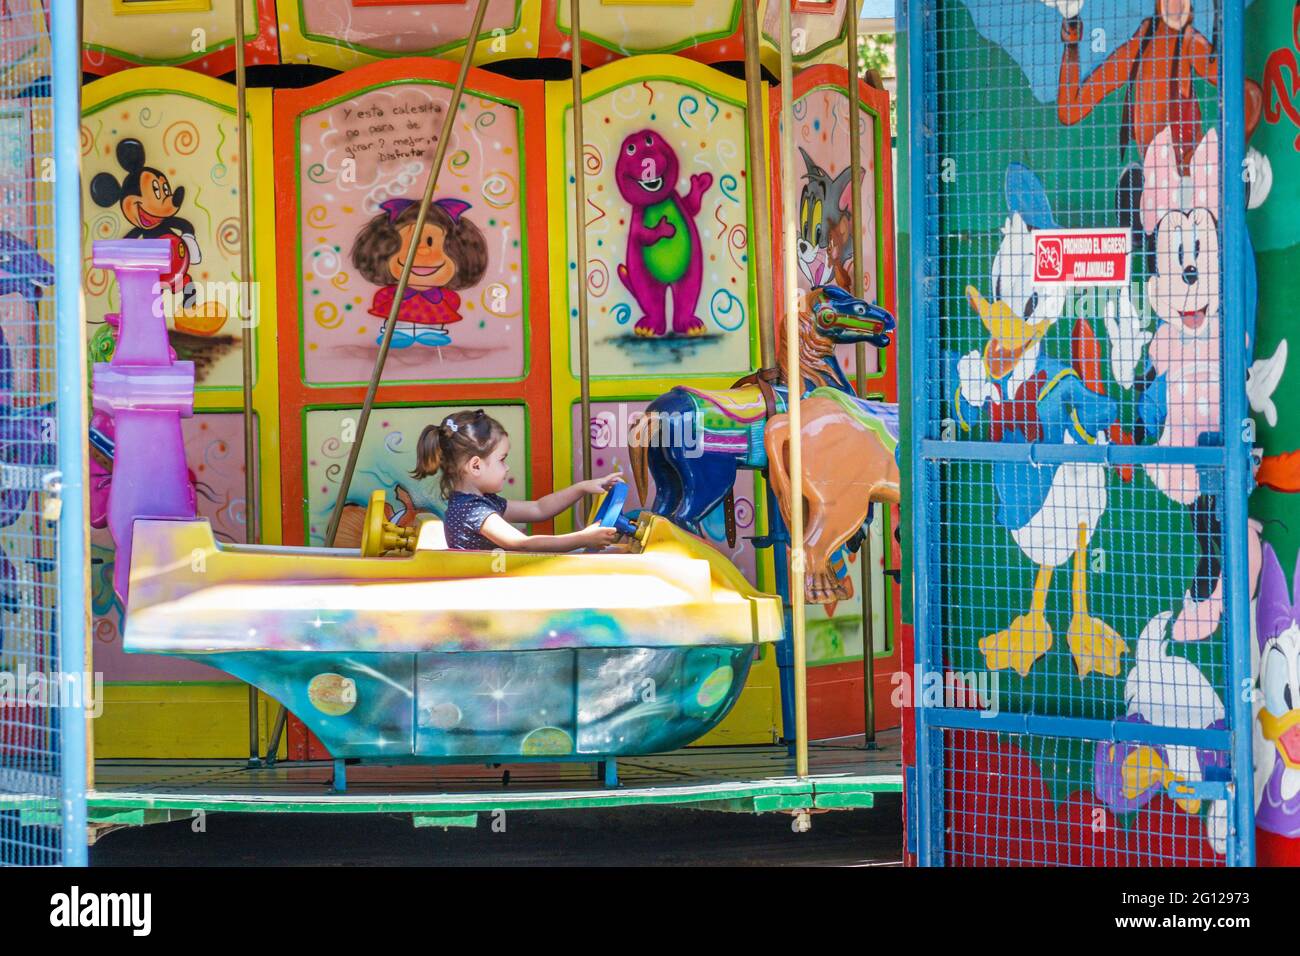 Argentina Buenos Aires Recoleta Plaza Teniente General Emilio Mitre piazza pubblica parco divertimenti per bambini giostra giostra allegra-go-round ragazza ri Foto Stock